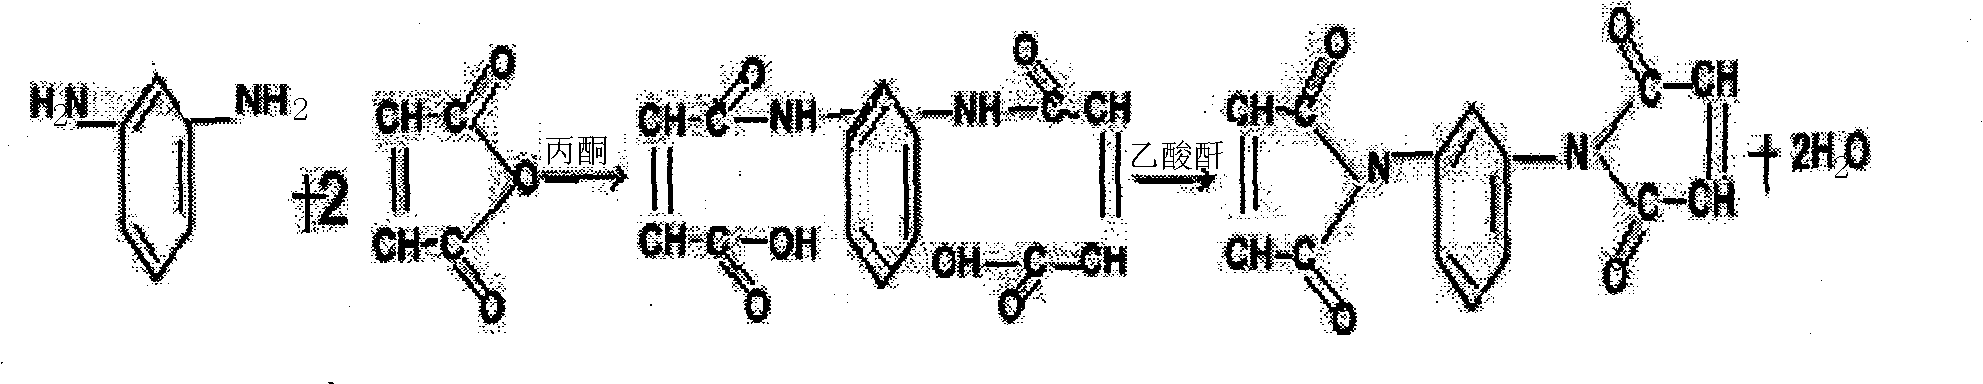 Preparation method of N,N'-m-phenylenebismaleimide